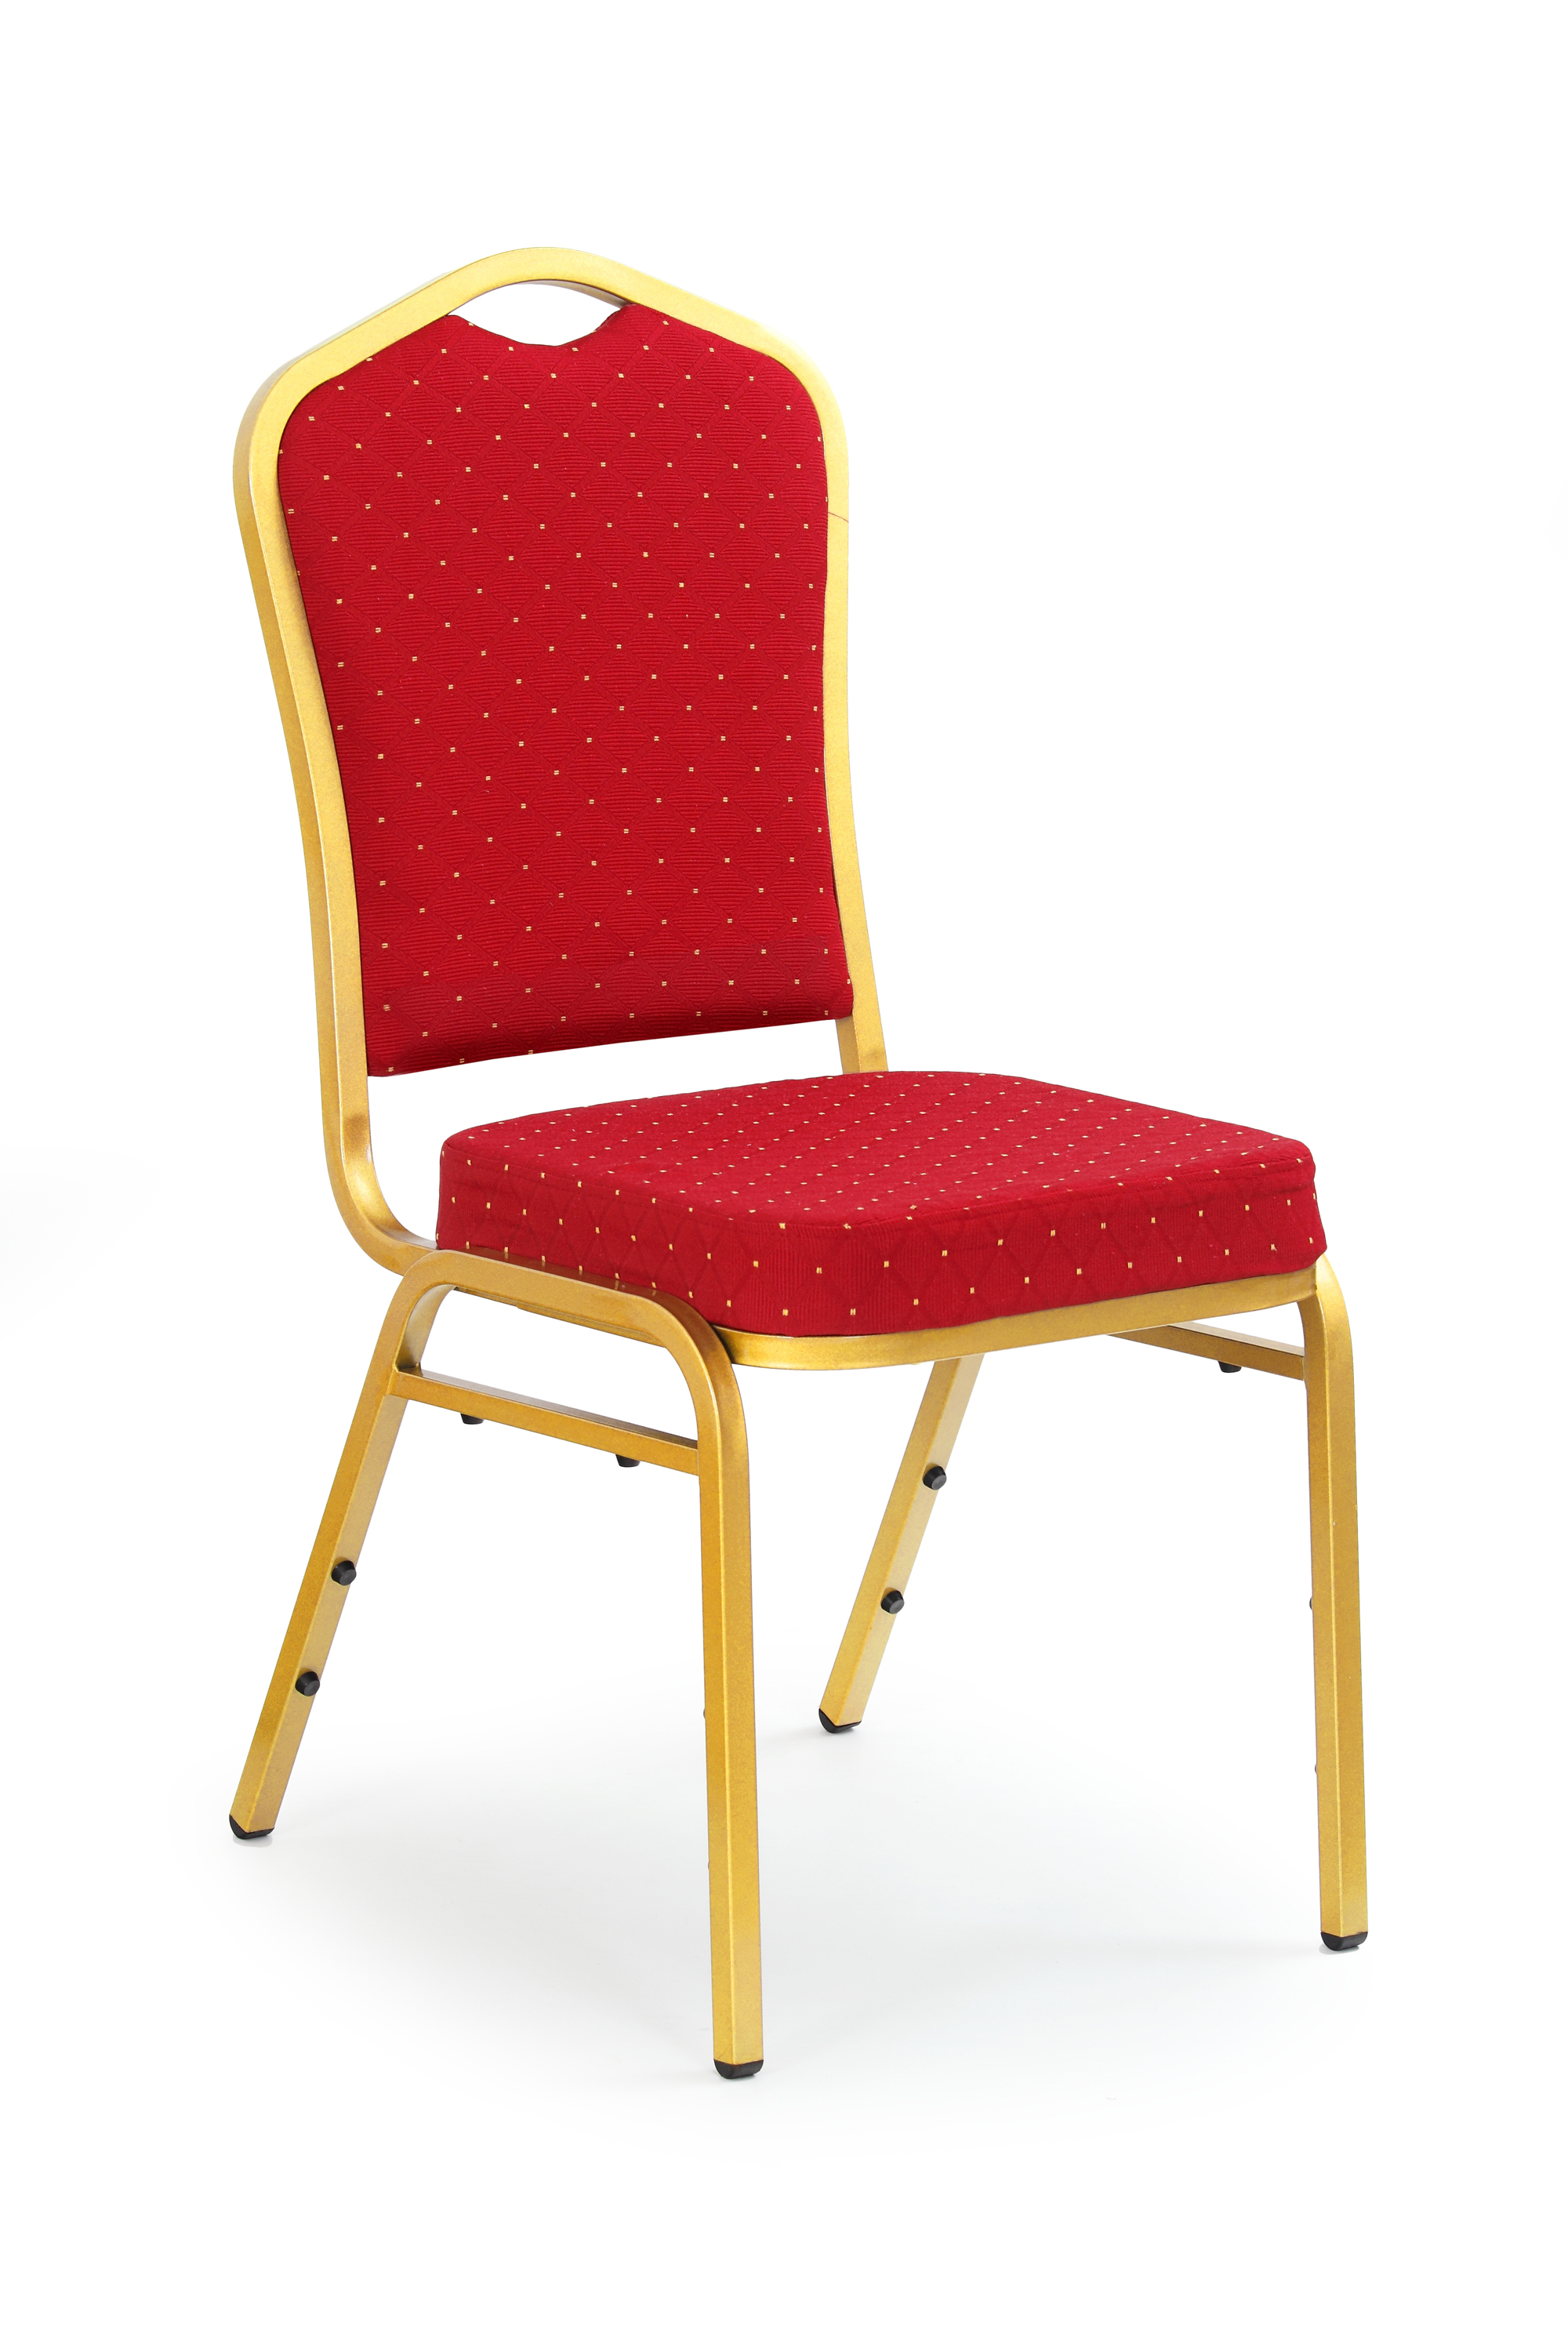 K66 židle bordó, zlaté nohy | Nábytek a dekorace > Jídelna > Jídelní židle